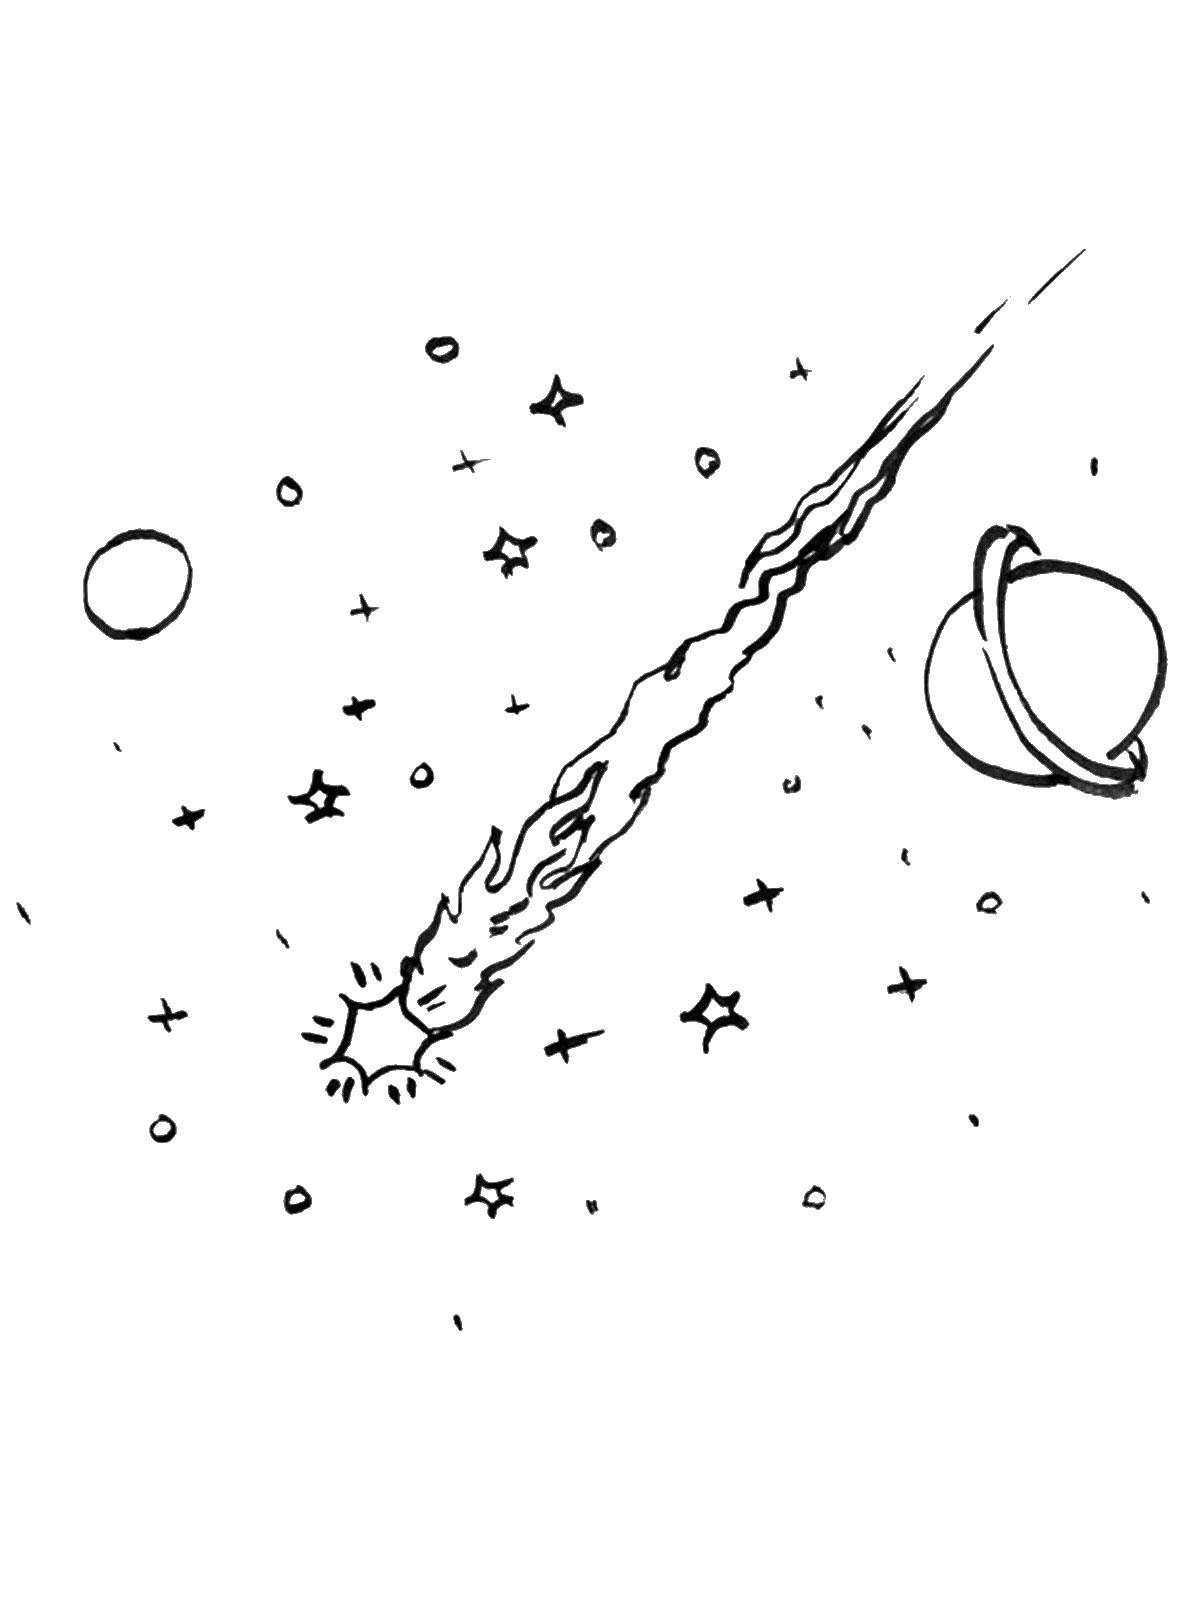 Раскраски Звезды и кометы Раскраски Звезды и кометы, раскраски про космос детям